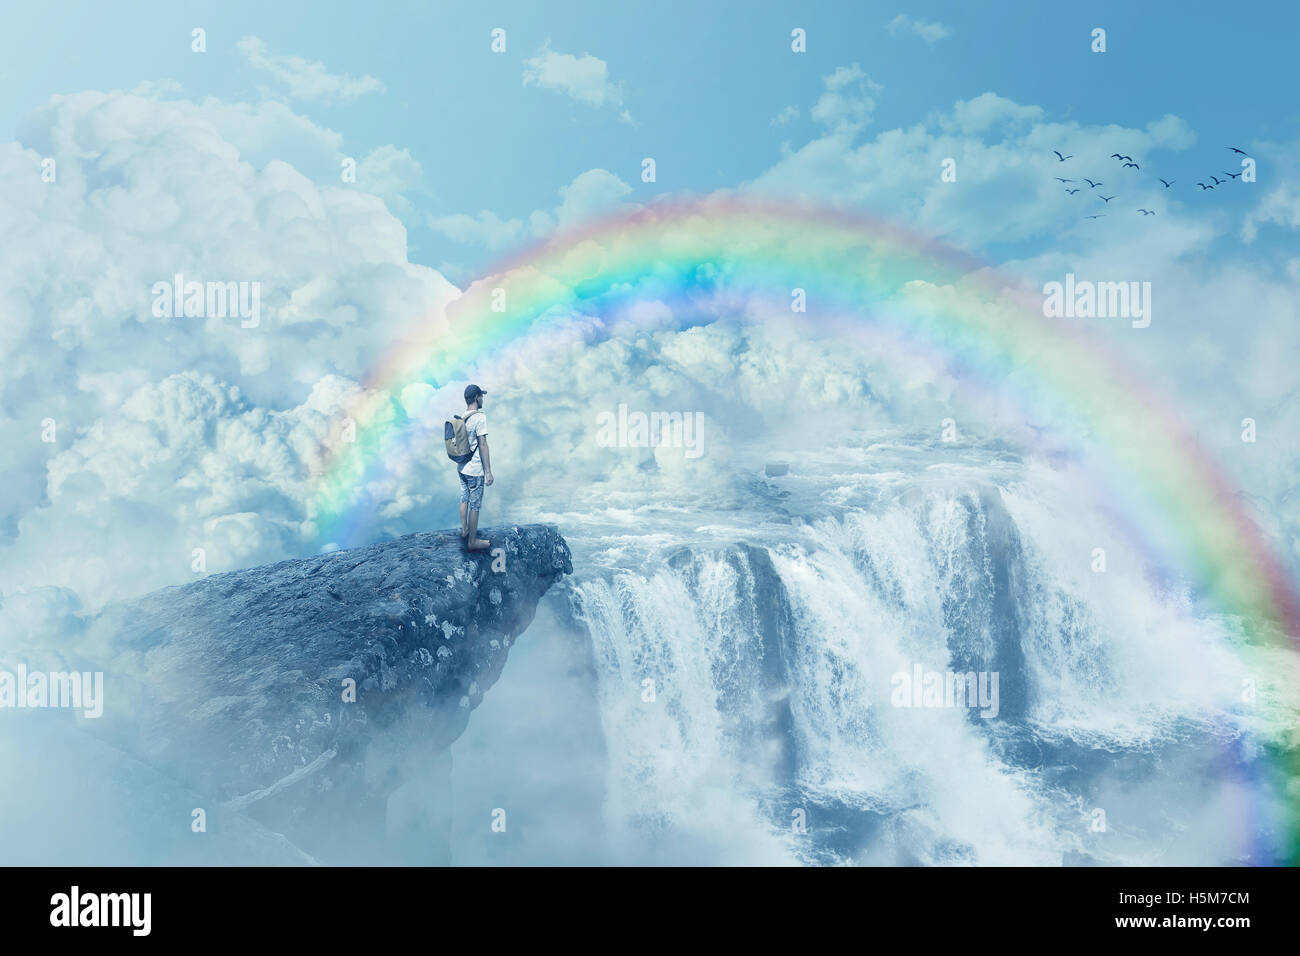 Jeune garçon sur une falaise à la recherche à l'horizon avec une cascade au-dessus des nuages. Chemin de vie ci-dessous un arc-en-ciel dans le paradis. Inspiration Banque D'Images